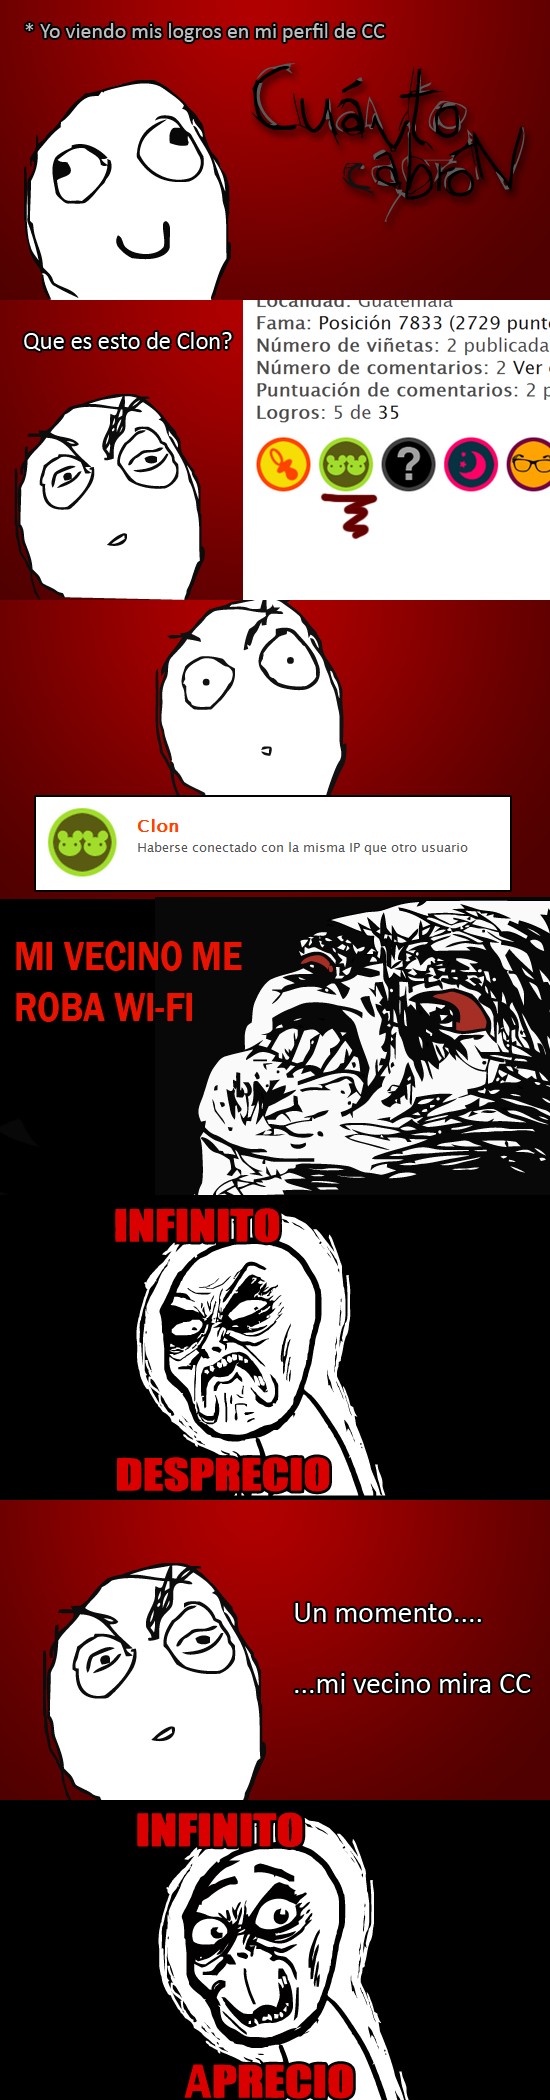 Infinito_desprecio - Me Roba WiFi